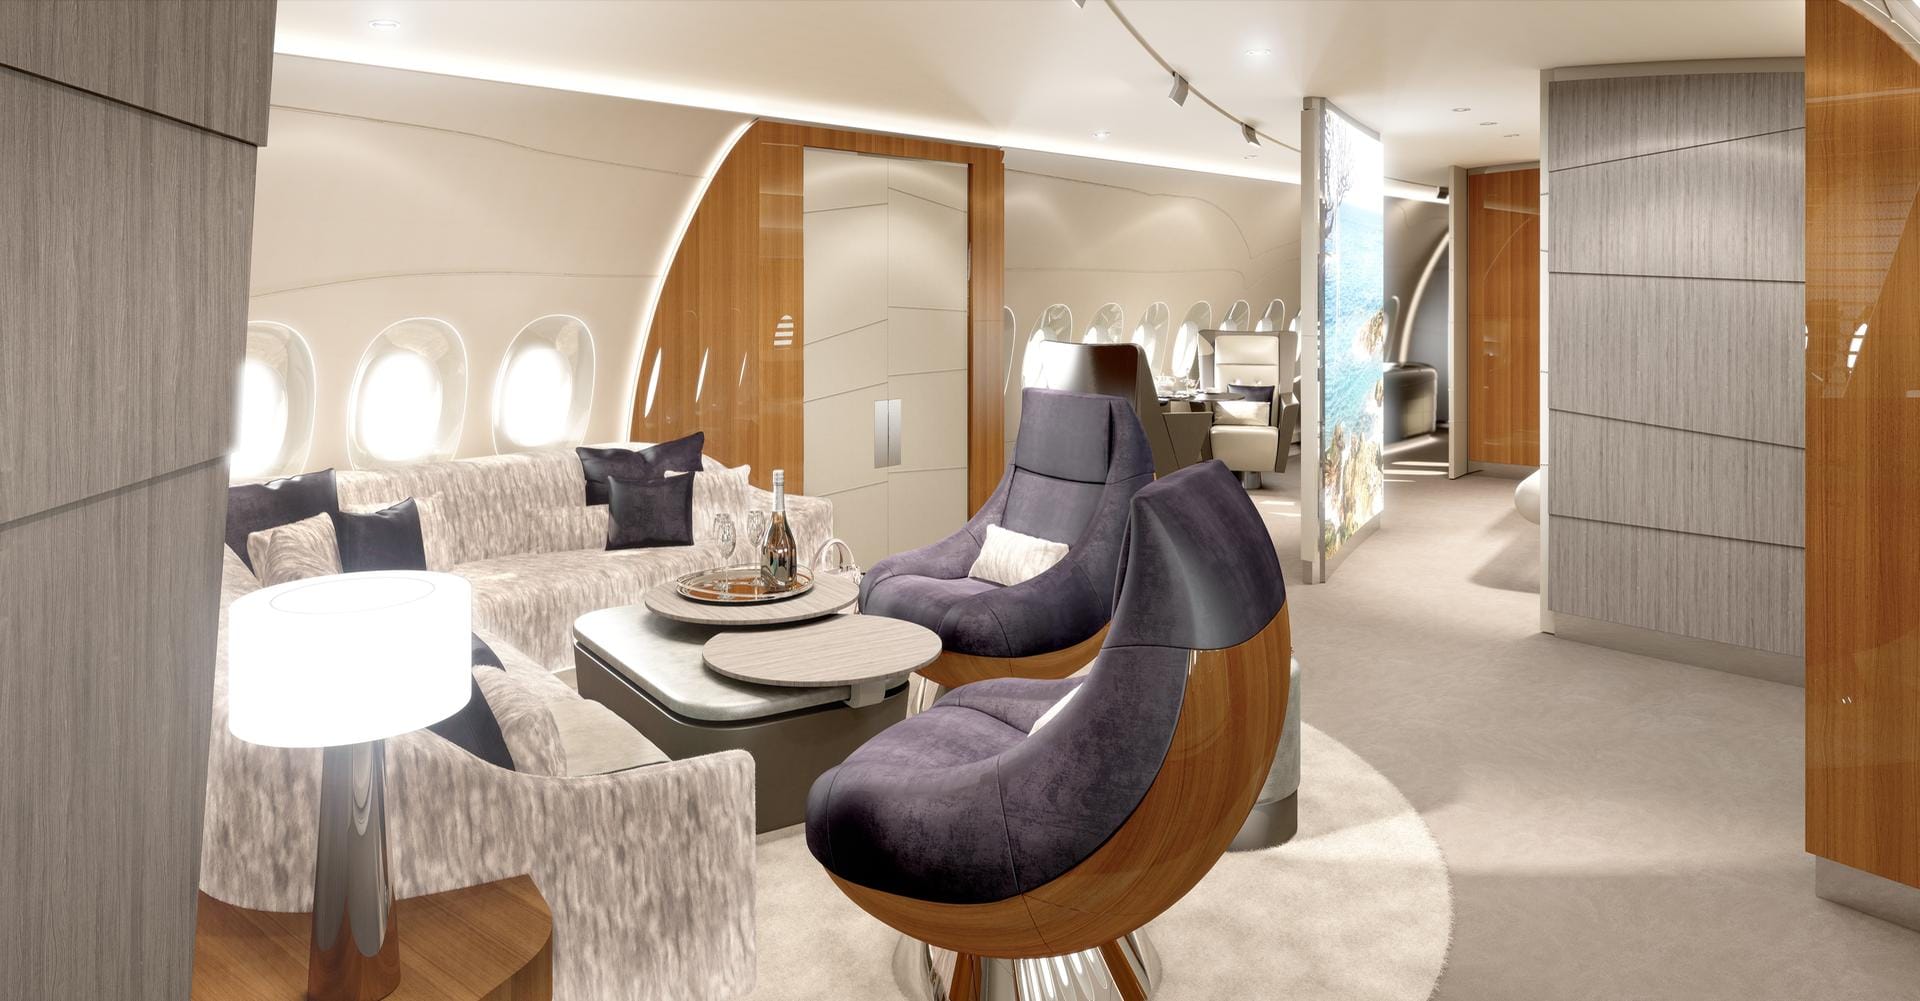 Das neue Kabinenkonzept der Lufthansa-Technik für die VVIP-Flugzeuge: Auf 270 Quadratmetern gönnen sich Superreiche im A350 Luxus pur – bequeme Sessel und Kinoleinwand inklusive.